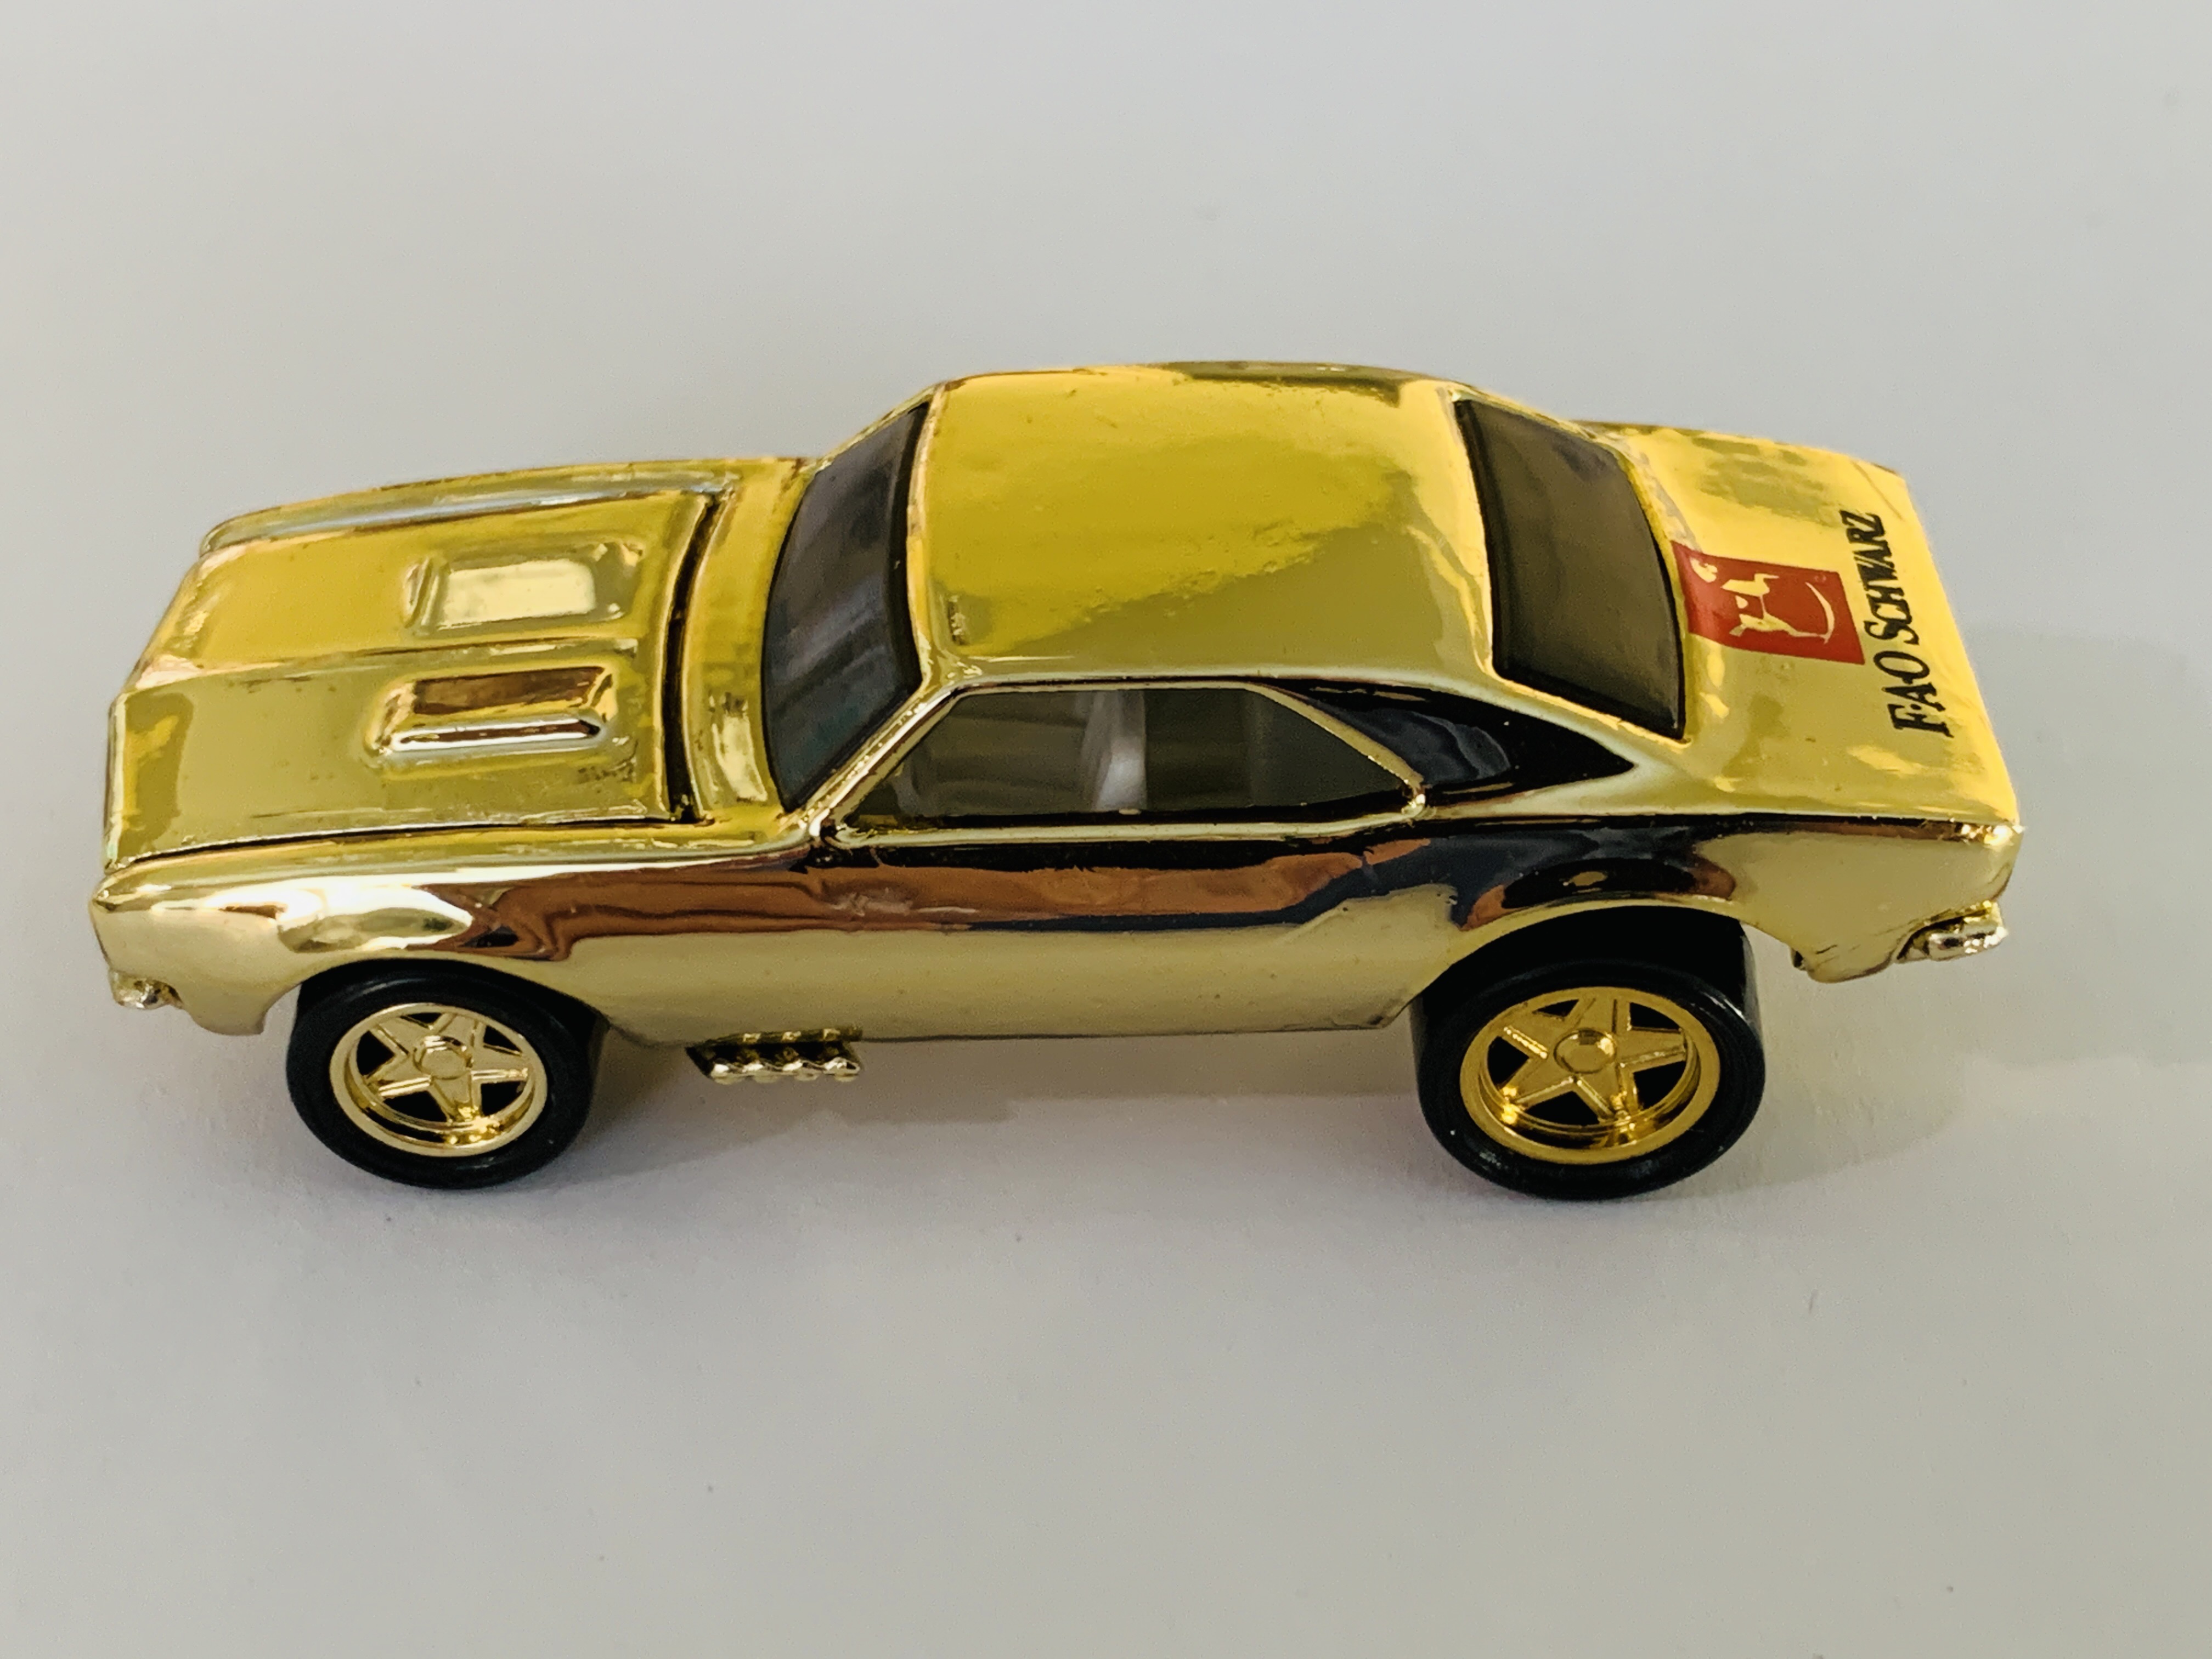 Hot Wheels FAO Schwarz Gold Series II '67 Camaro